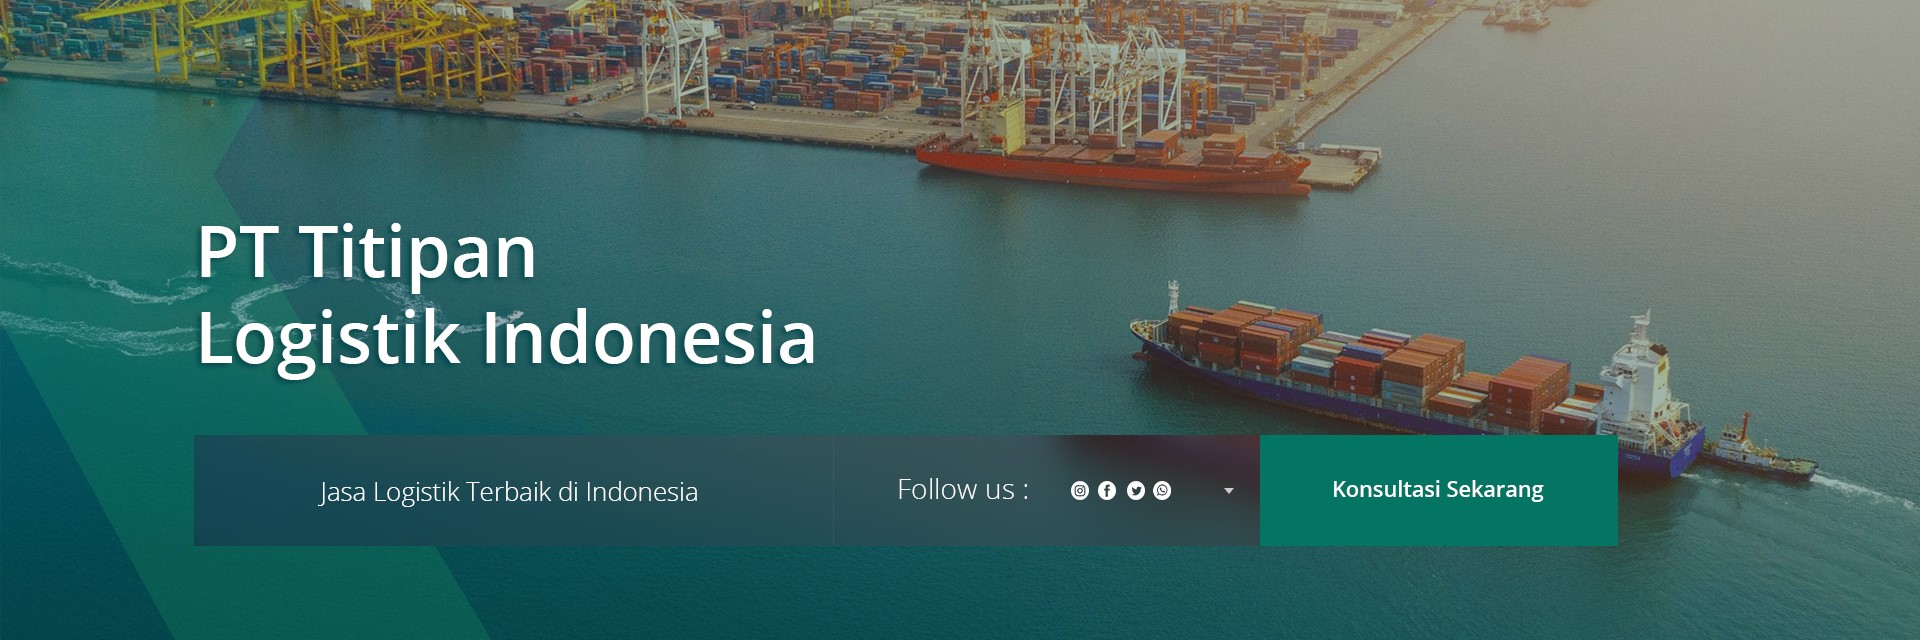 PT Titipan Logistik Indonesia - jasa logistik jakarta